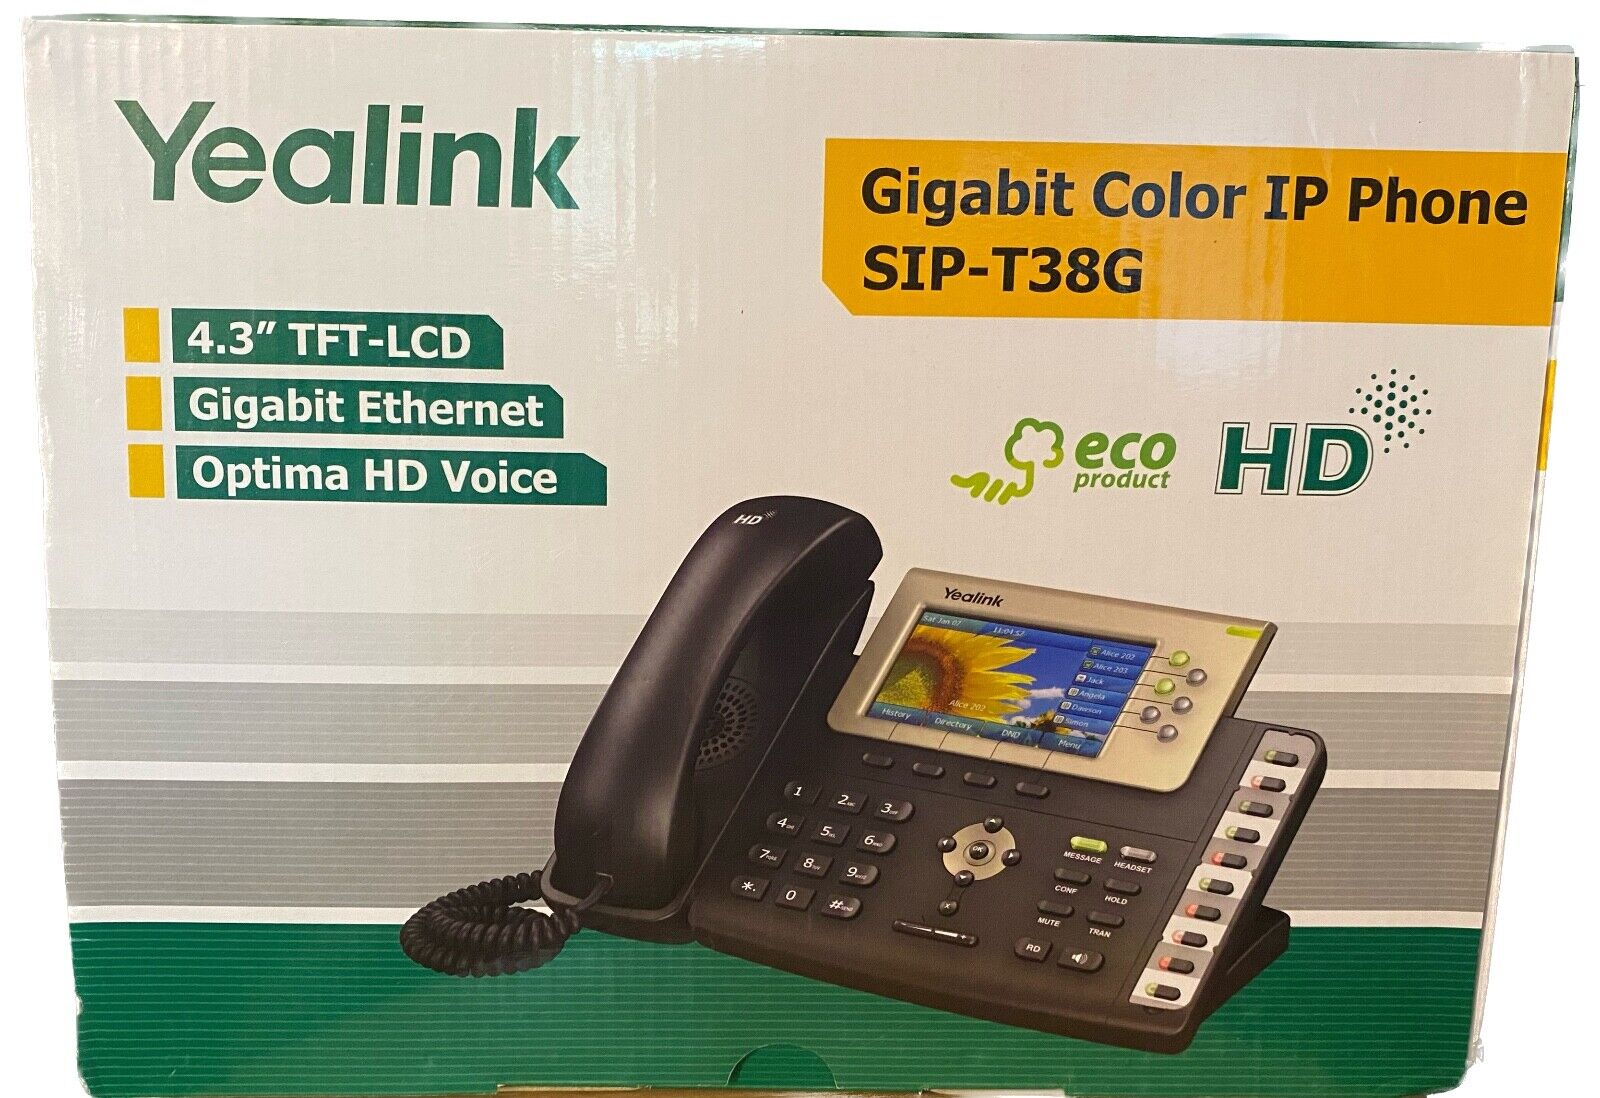 Yealink SIP-T38G Gigabit Color IP Phone - NEW Без бренда - фотография #2